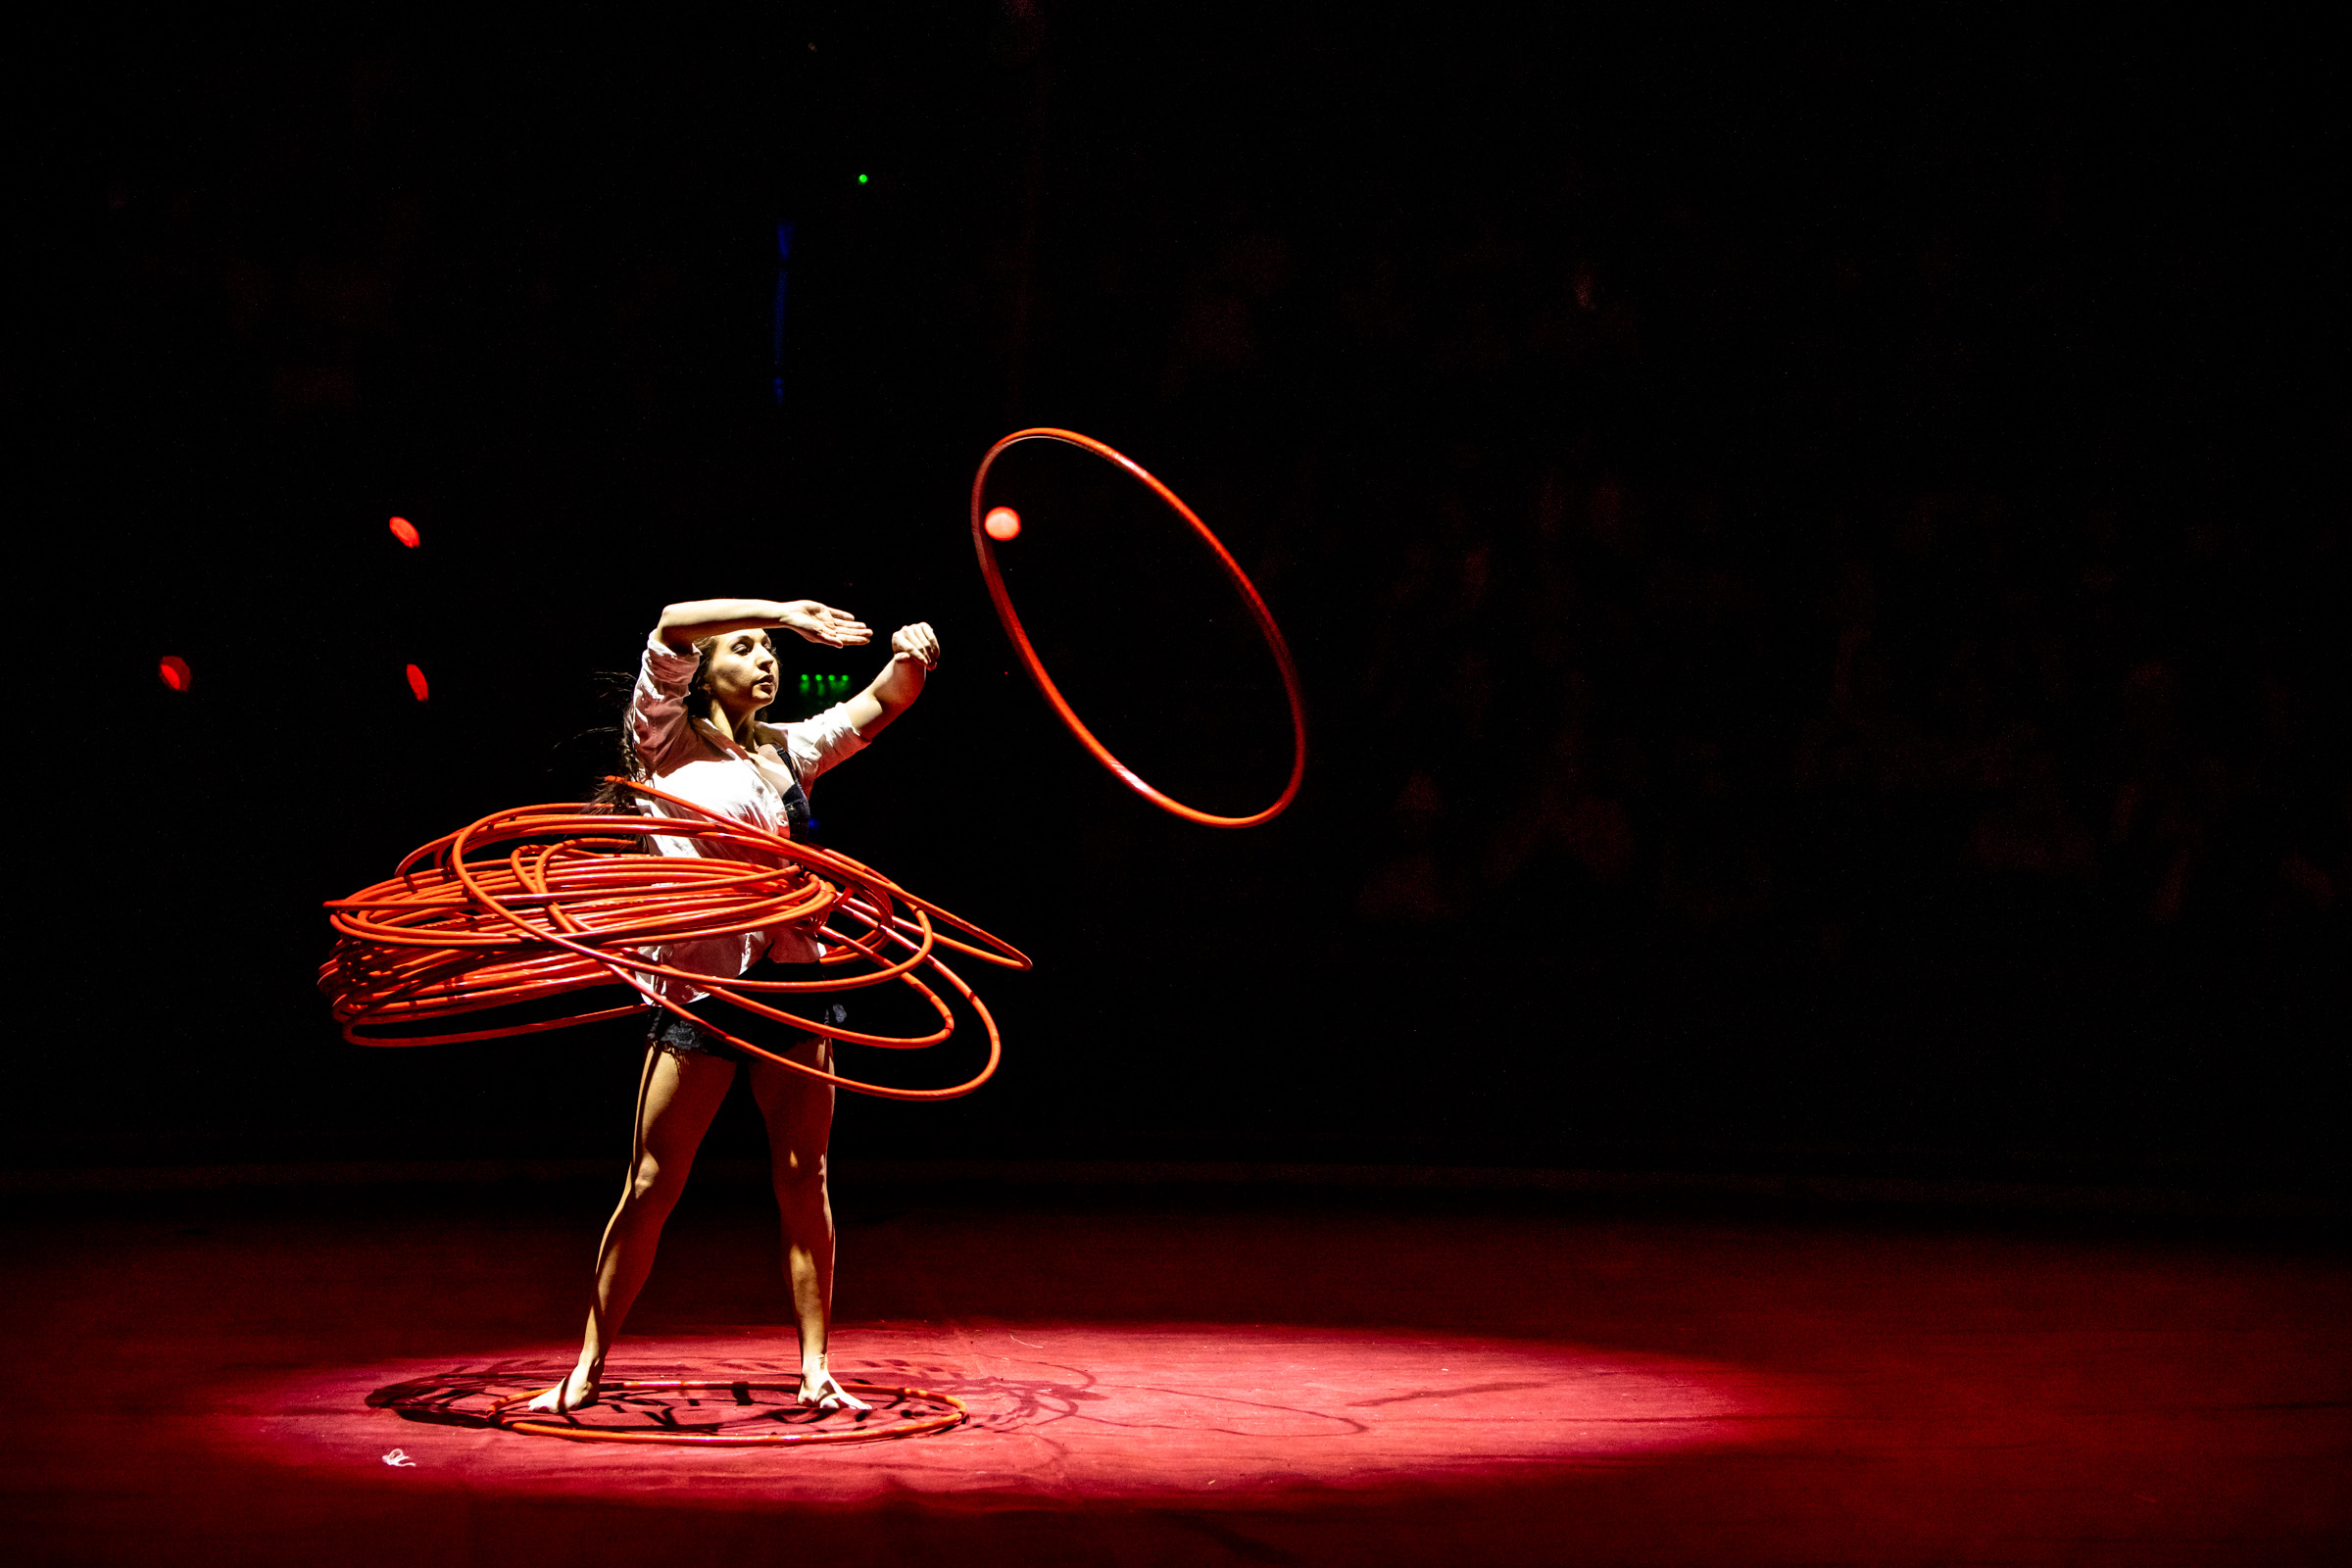 Egykerekű bicikli, hulahopp, lélegzetelállító akrobataszámok – Fotógalériánk a Budapest Cirkusz Fesztiválról